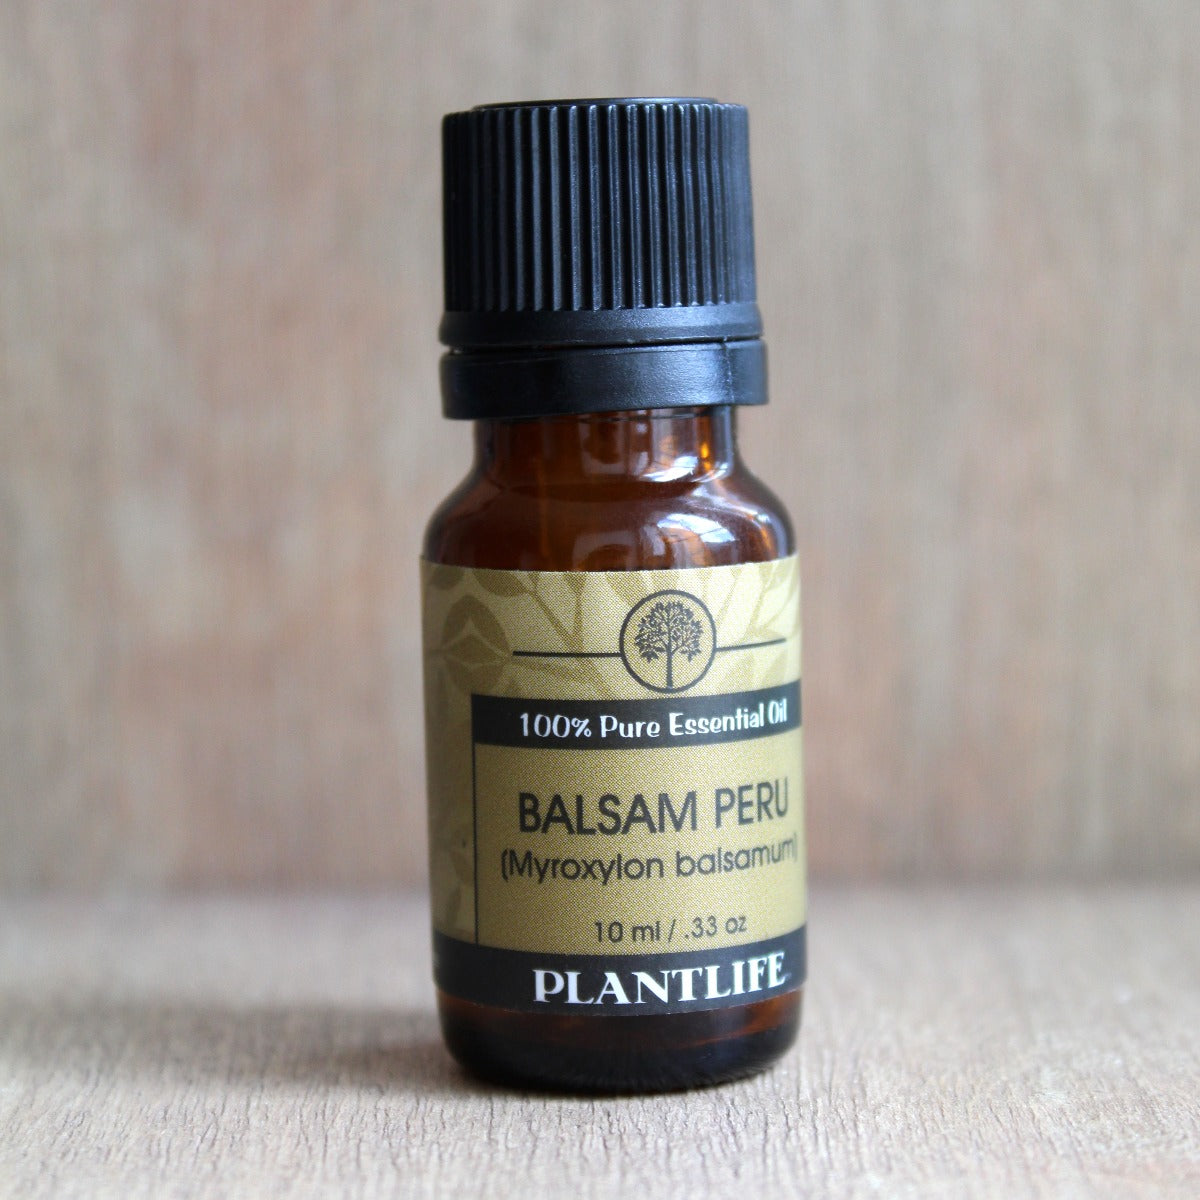 Balsam Peru Essential Oil